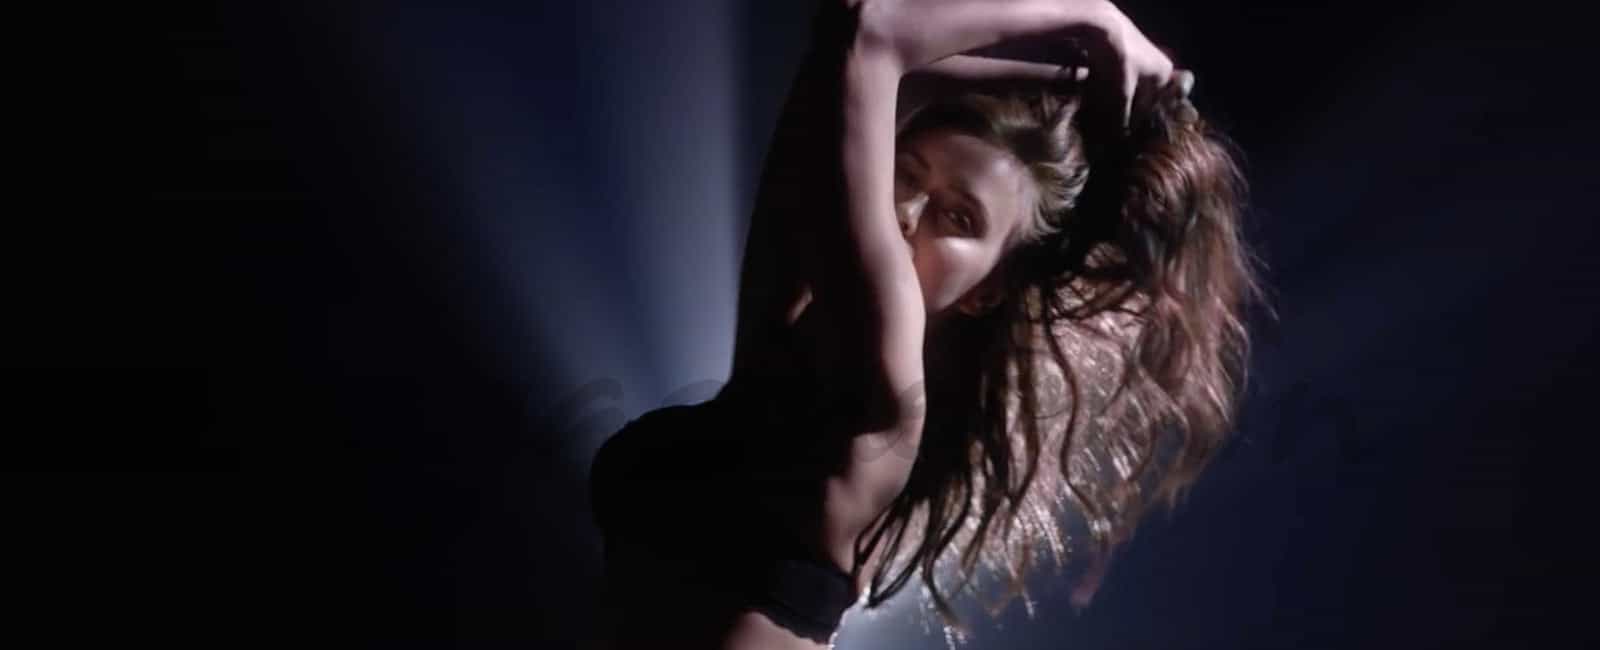 El nuevo y sensual vídeo de Irina Shayk